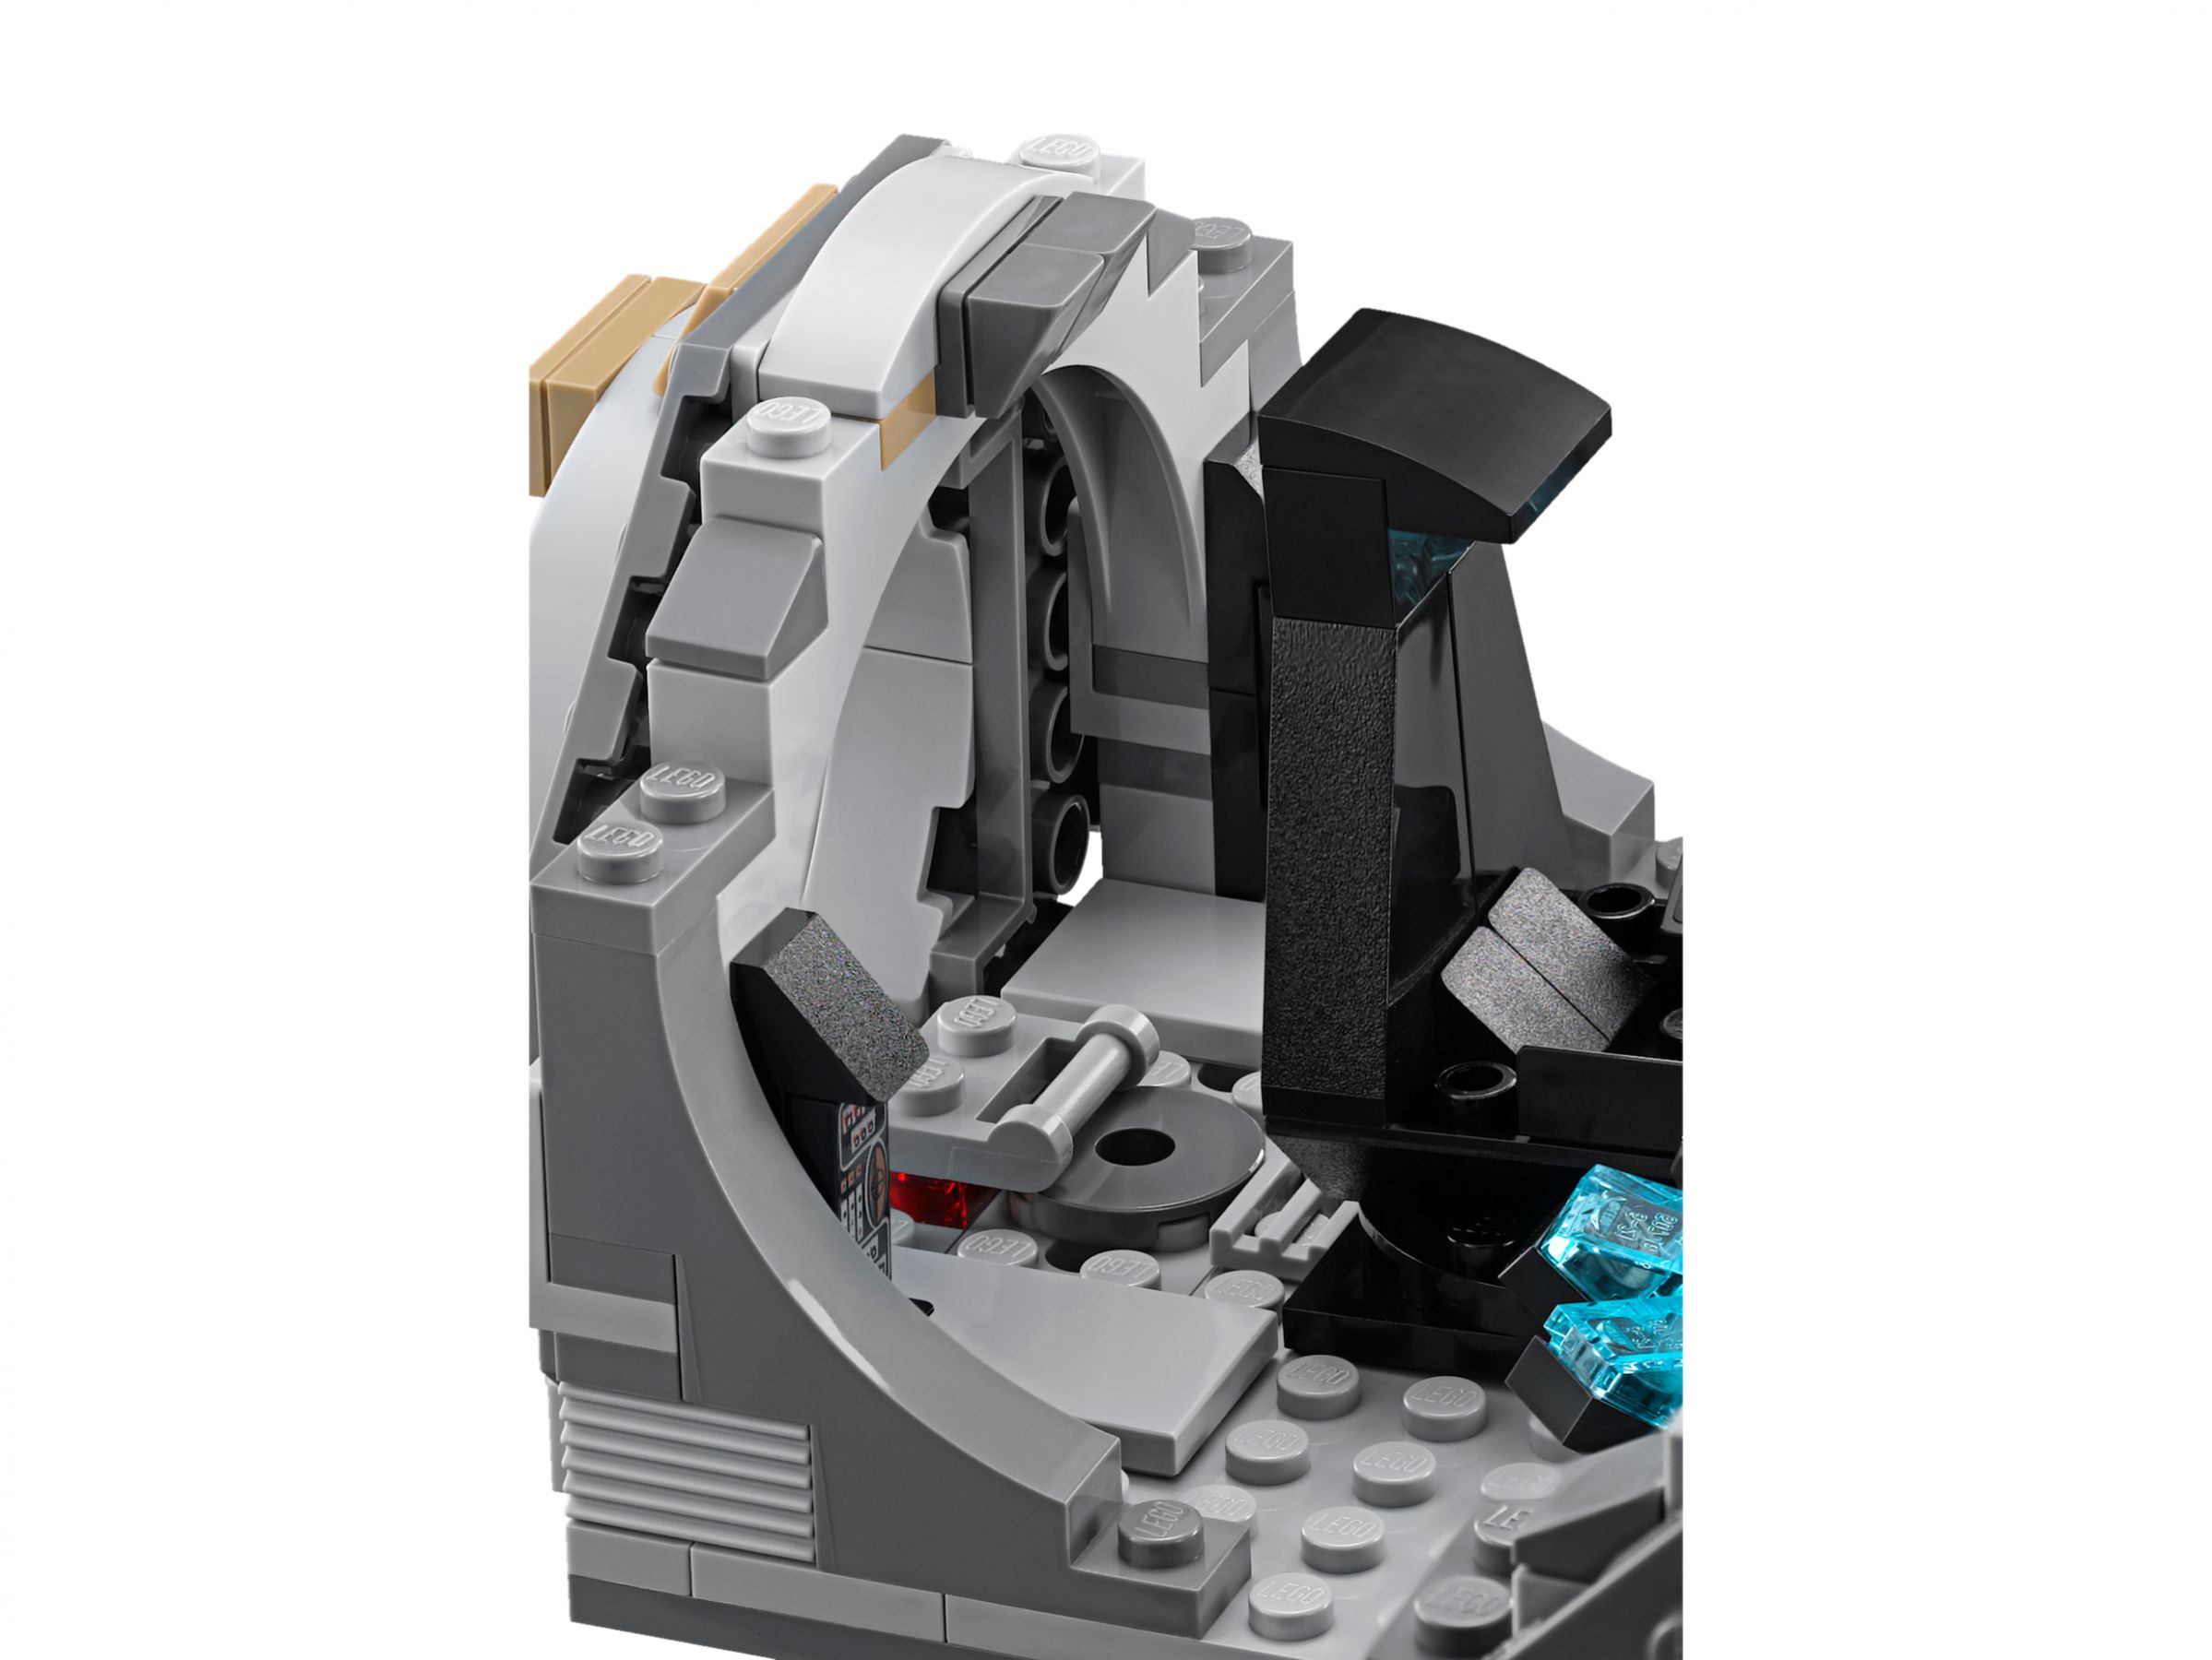 LEGO Star Wars 75093 Death Star™ Final Duel LEGO_75093_alt7.jpg